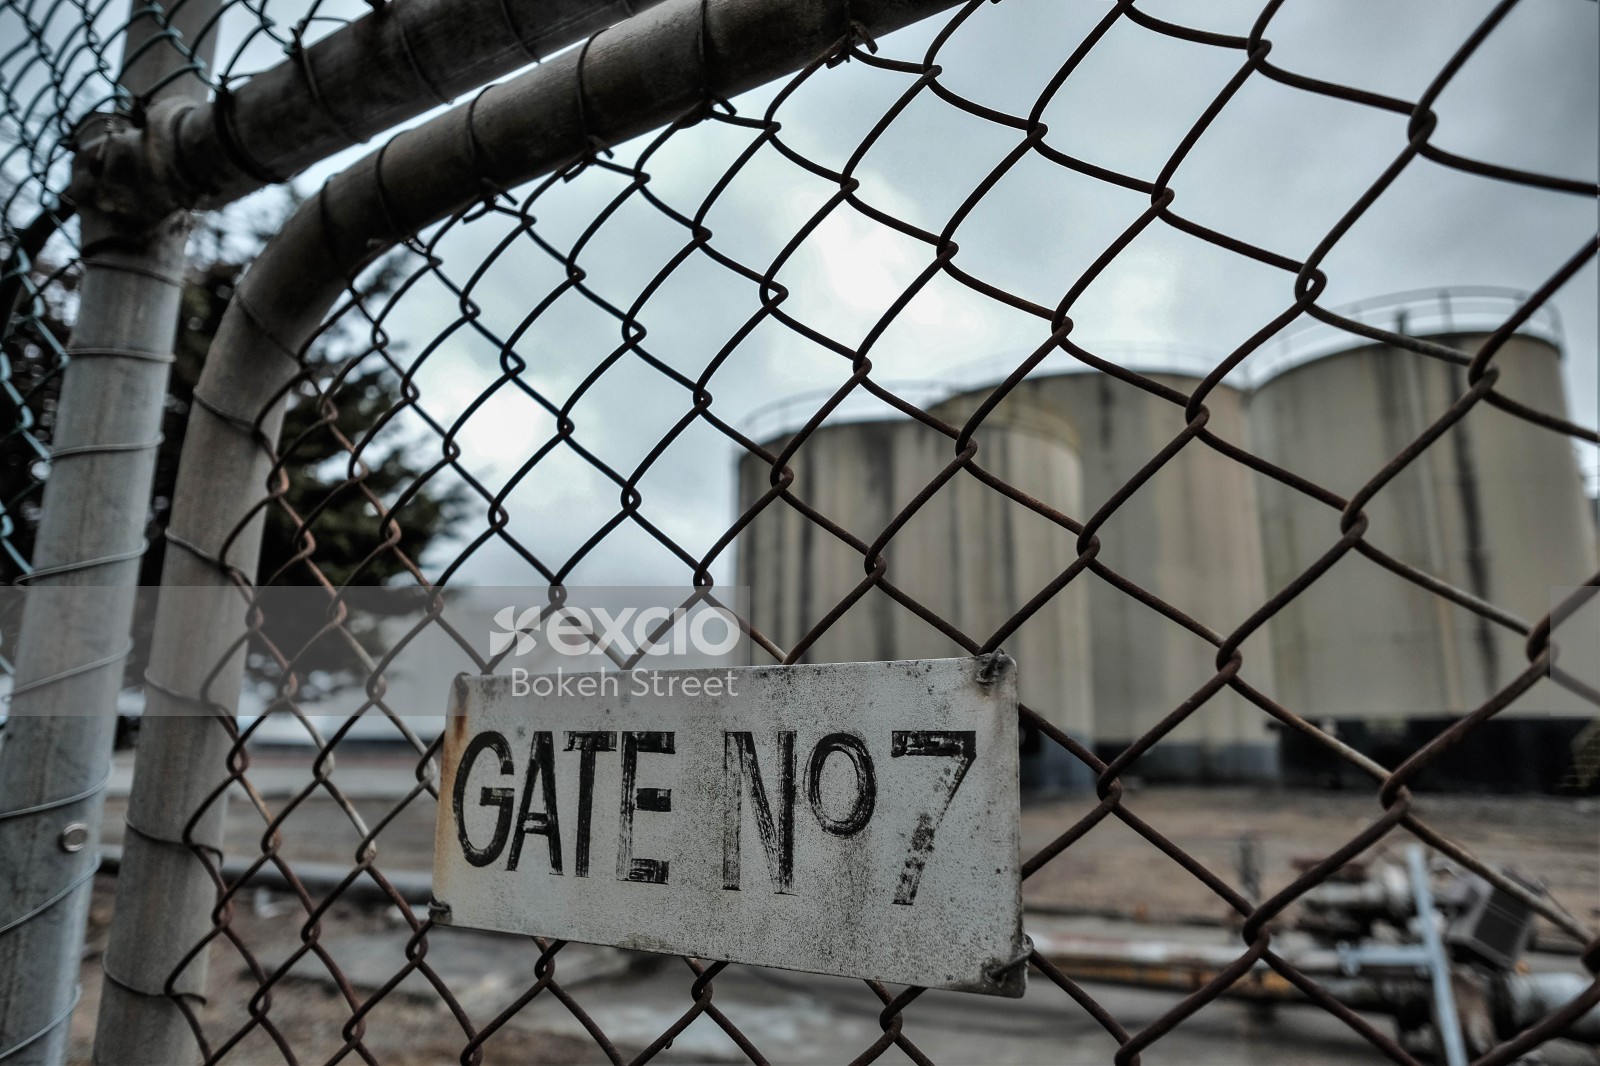 Gate No. 7 of an oil depot